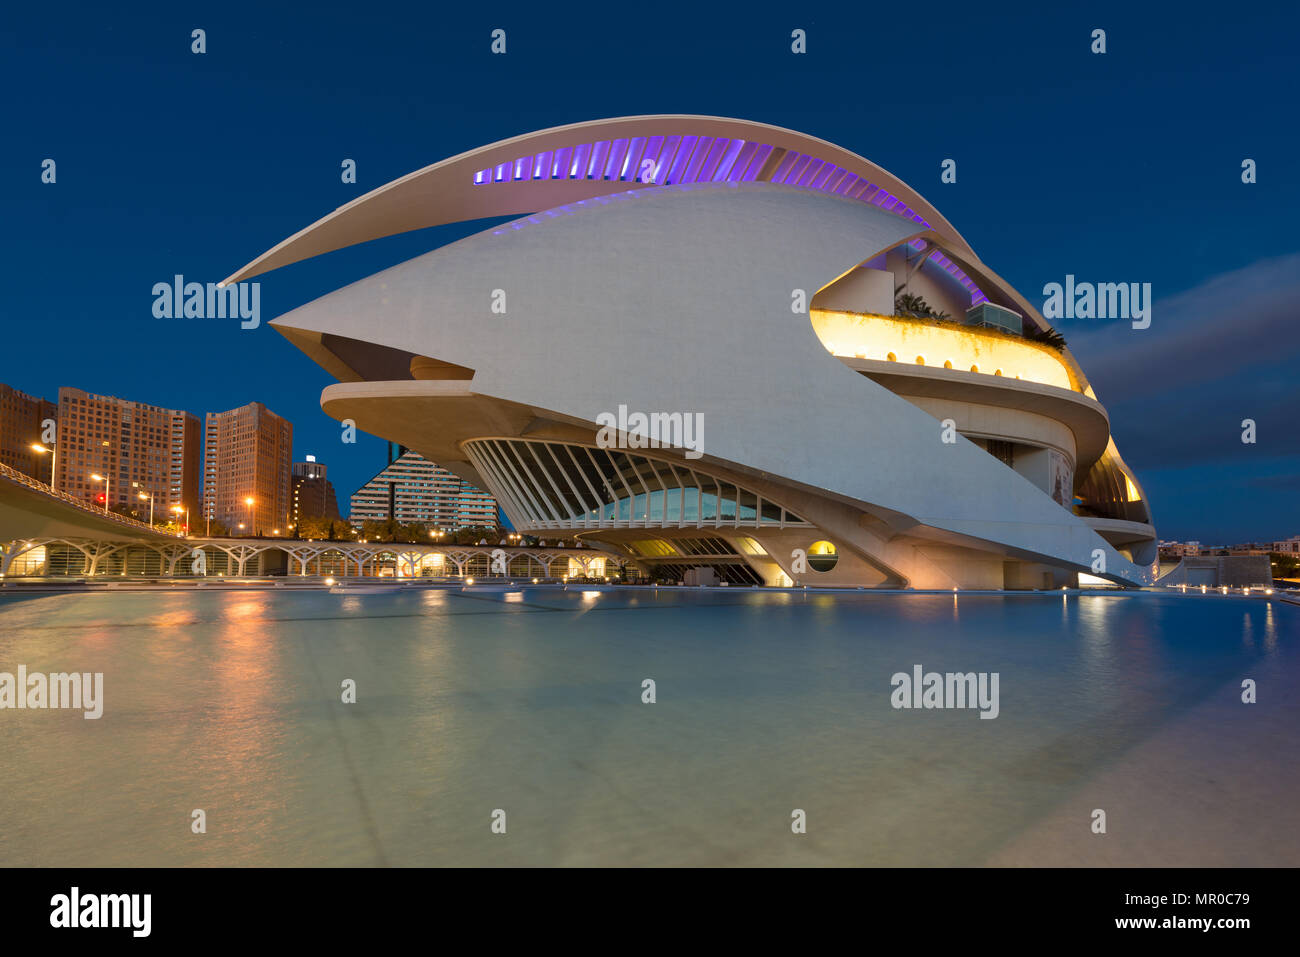 Valencia Opera House or Palau de les Arts Reina Sofia at night in Valencia, Spain. Stock Photo